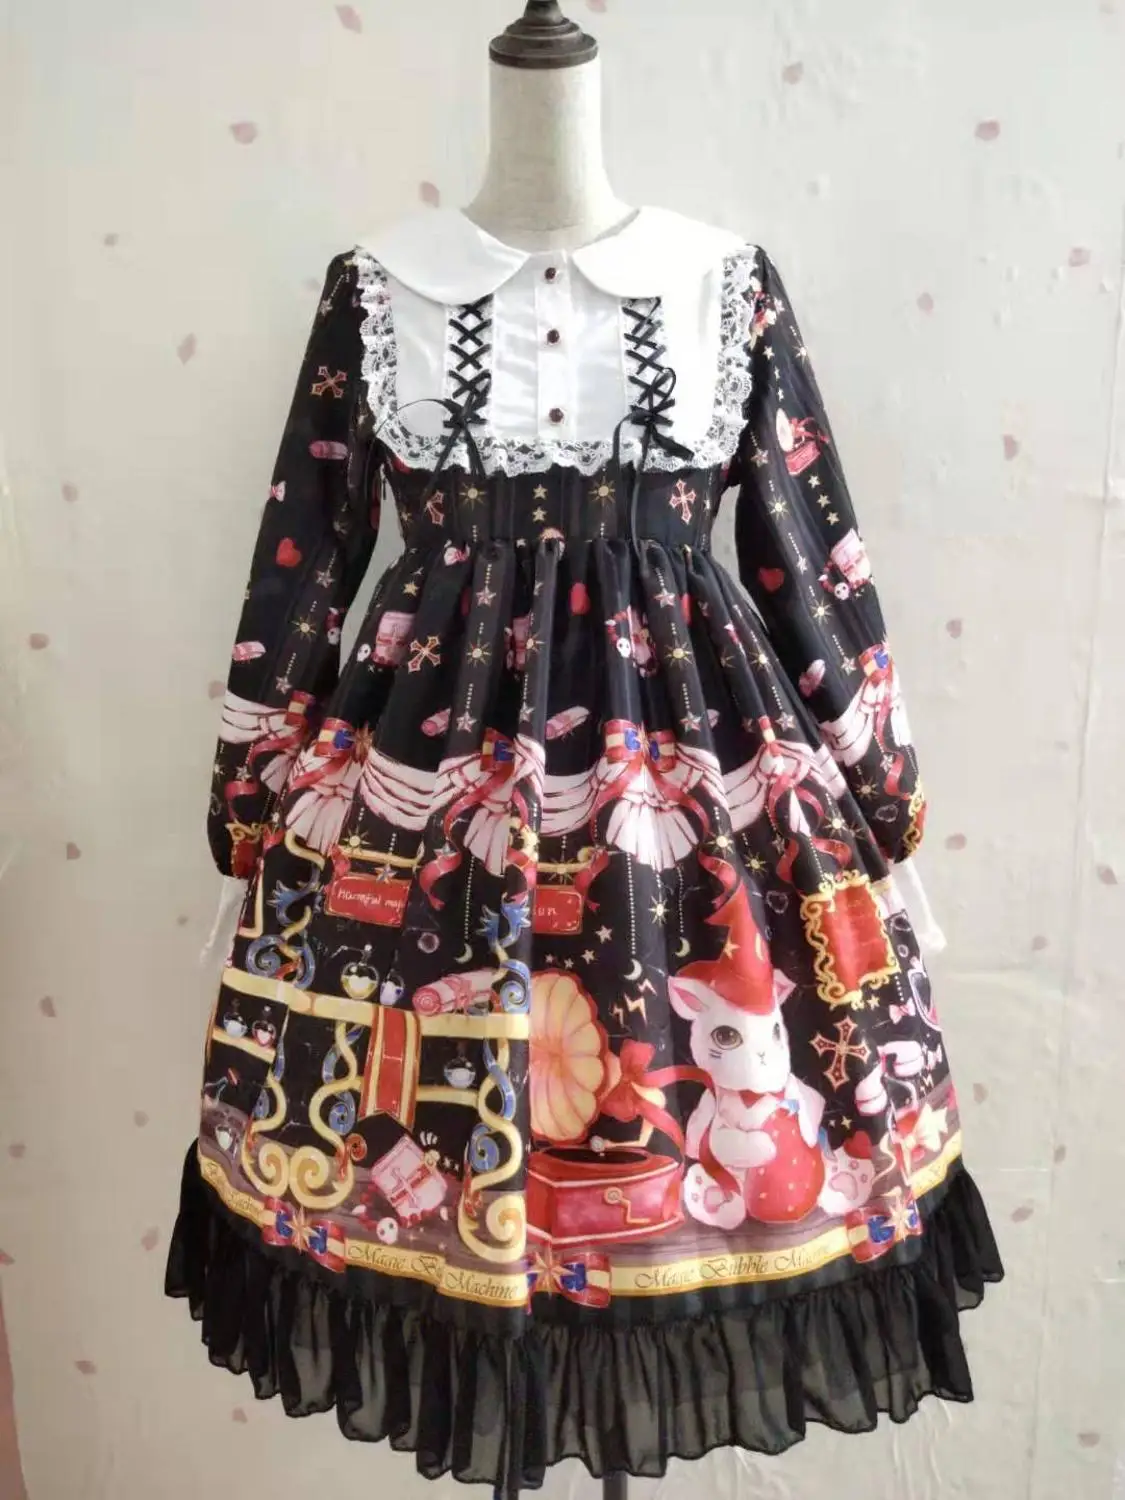 Kawaii Лолита платье мягкие японские игрушки Лолита волшебный кот милое платье с длинными рукавами